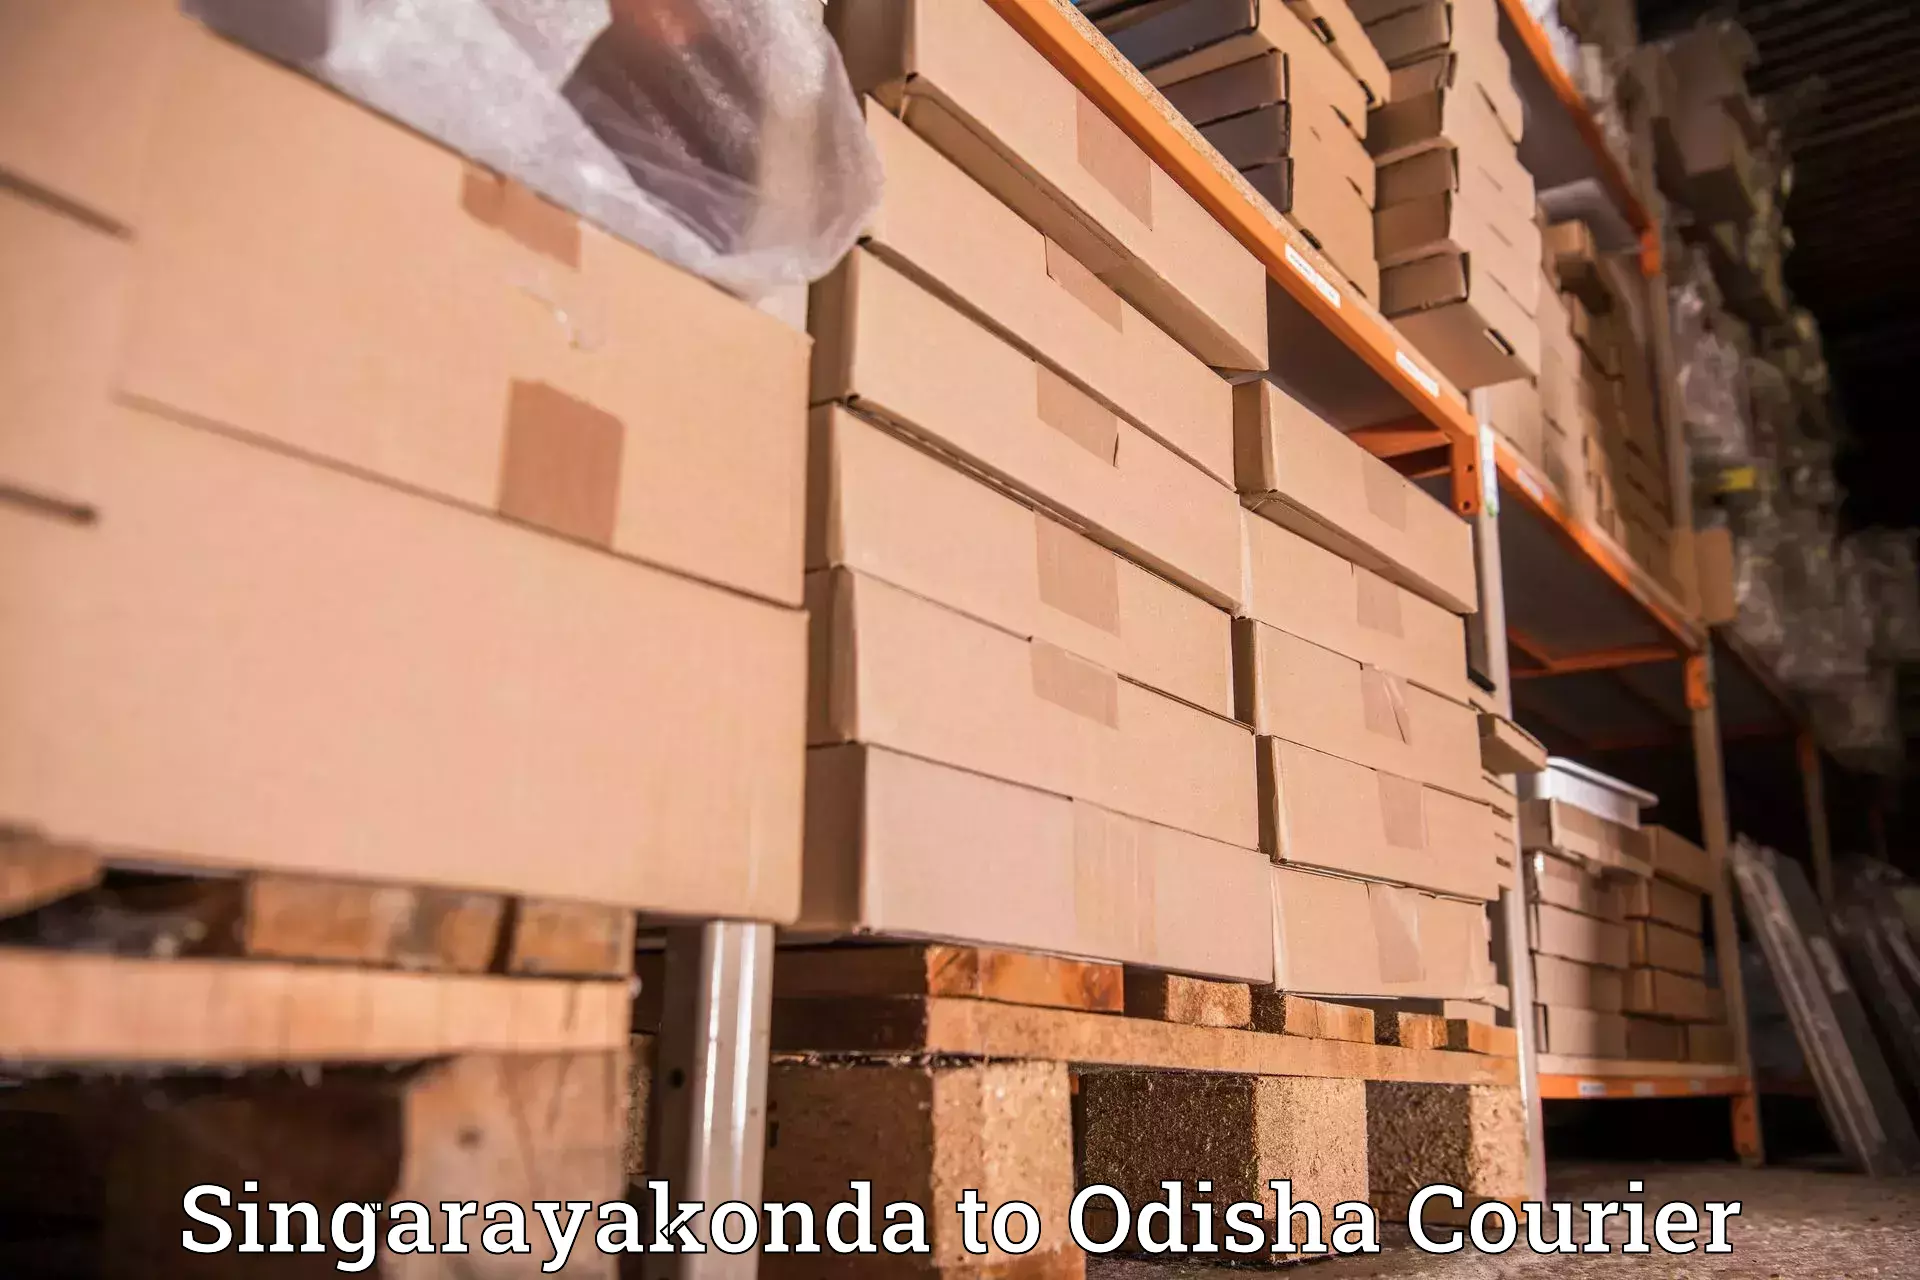 Quality courier services Singarayakonda to Puri